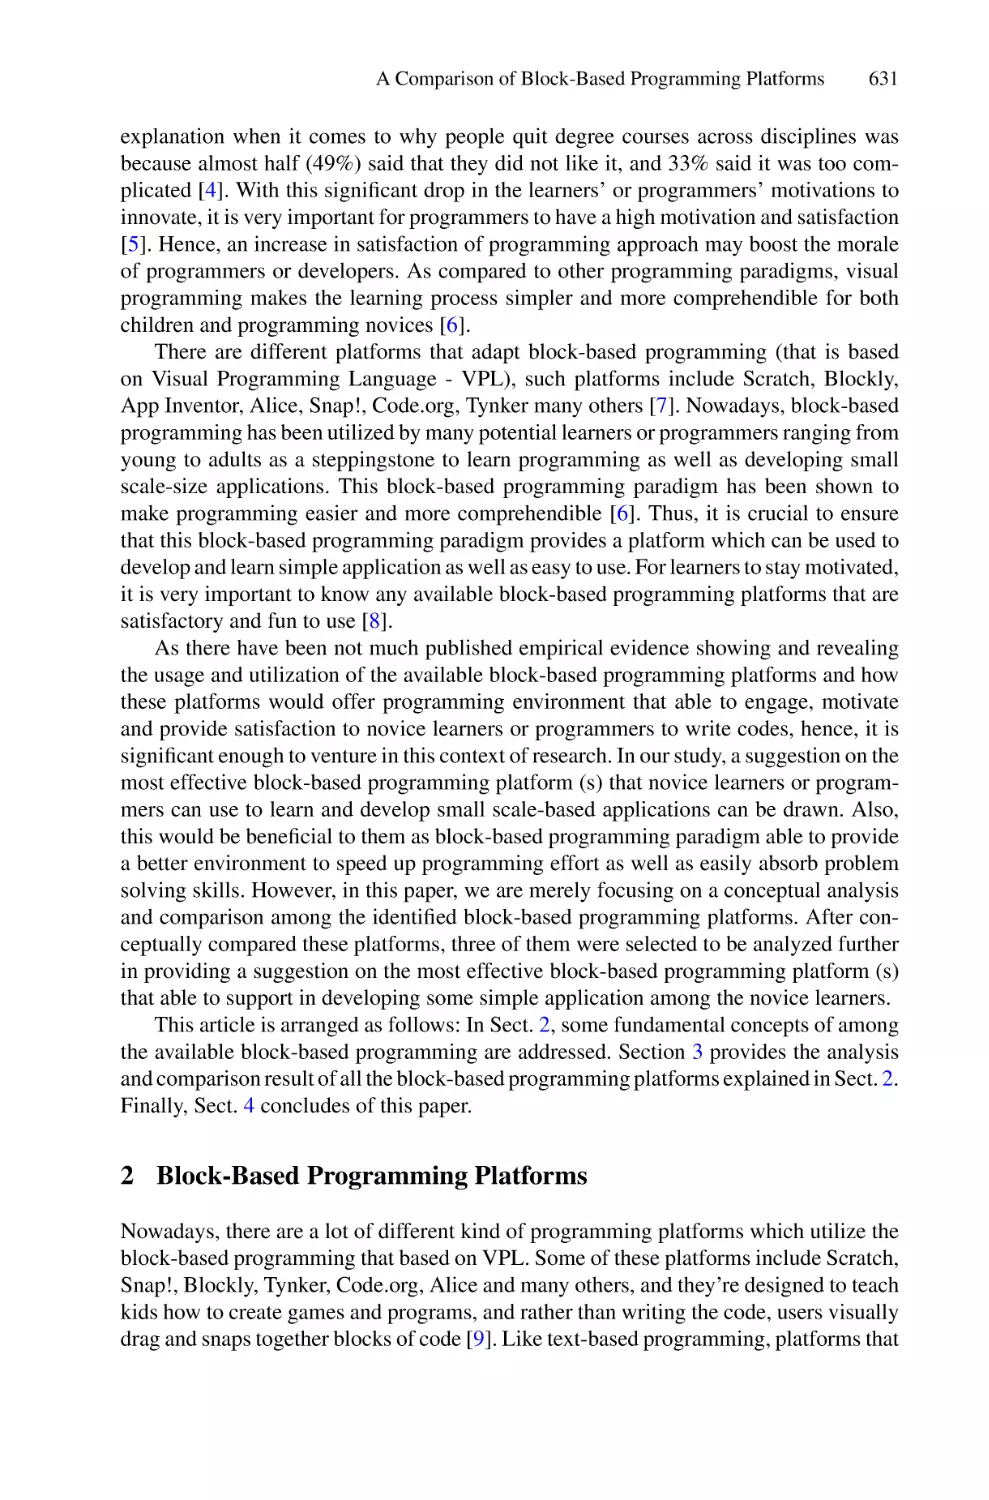 2 Block-Based Programming Platforms